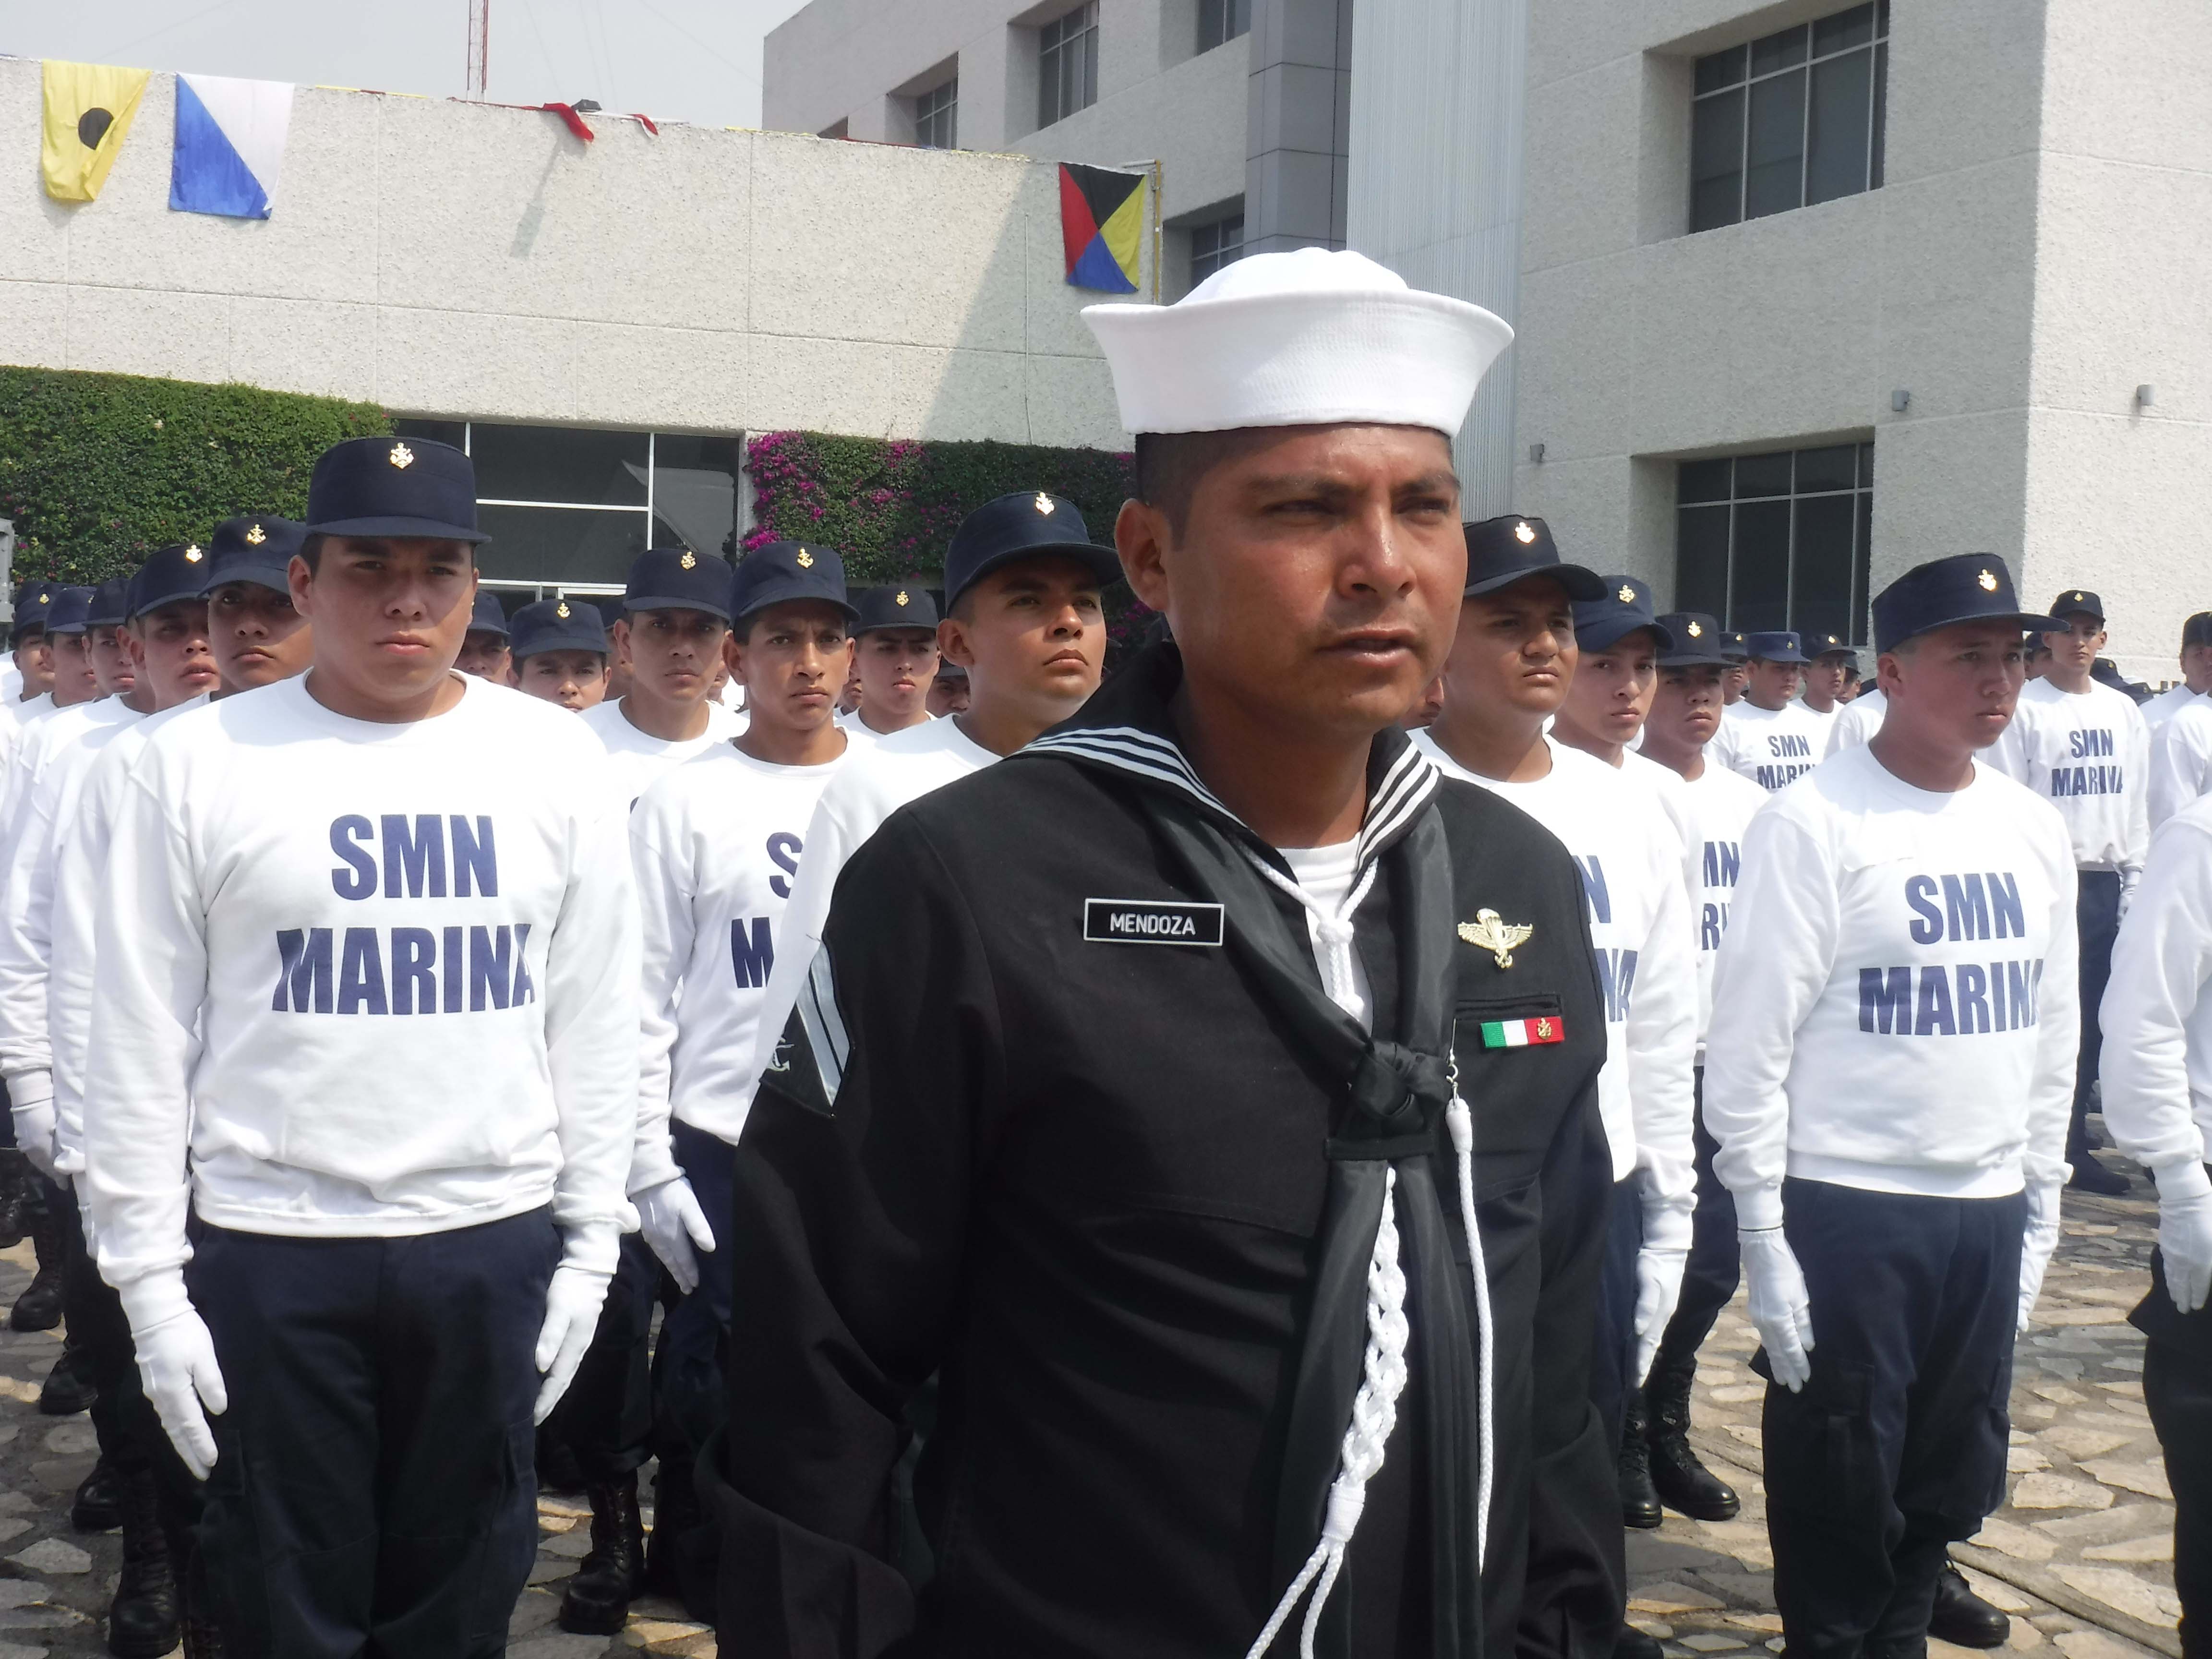 Ceremonia de Toma de Protesta y Jura de Bandera de los Marineros I.M. del SMN. en el Cuartel General del Alto Mando